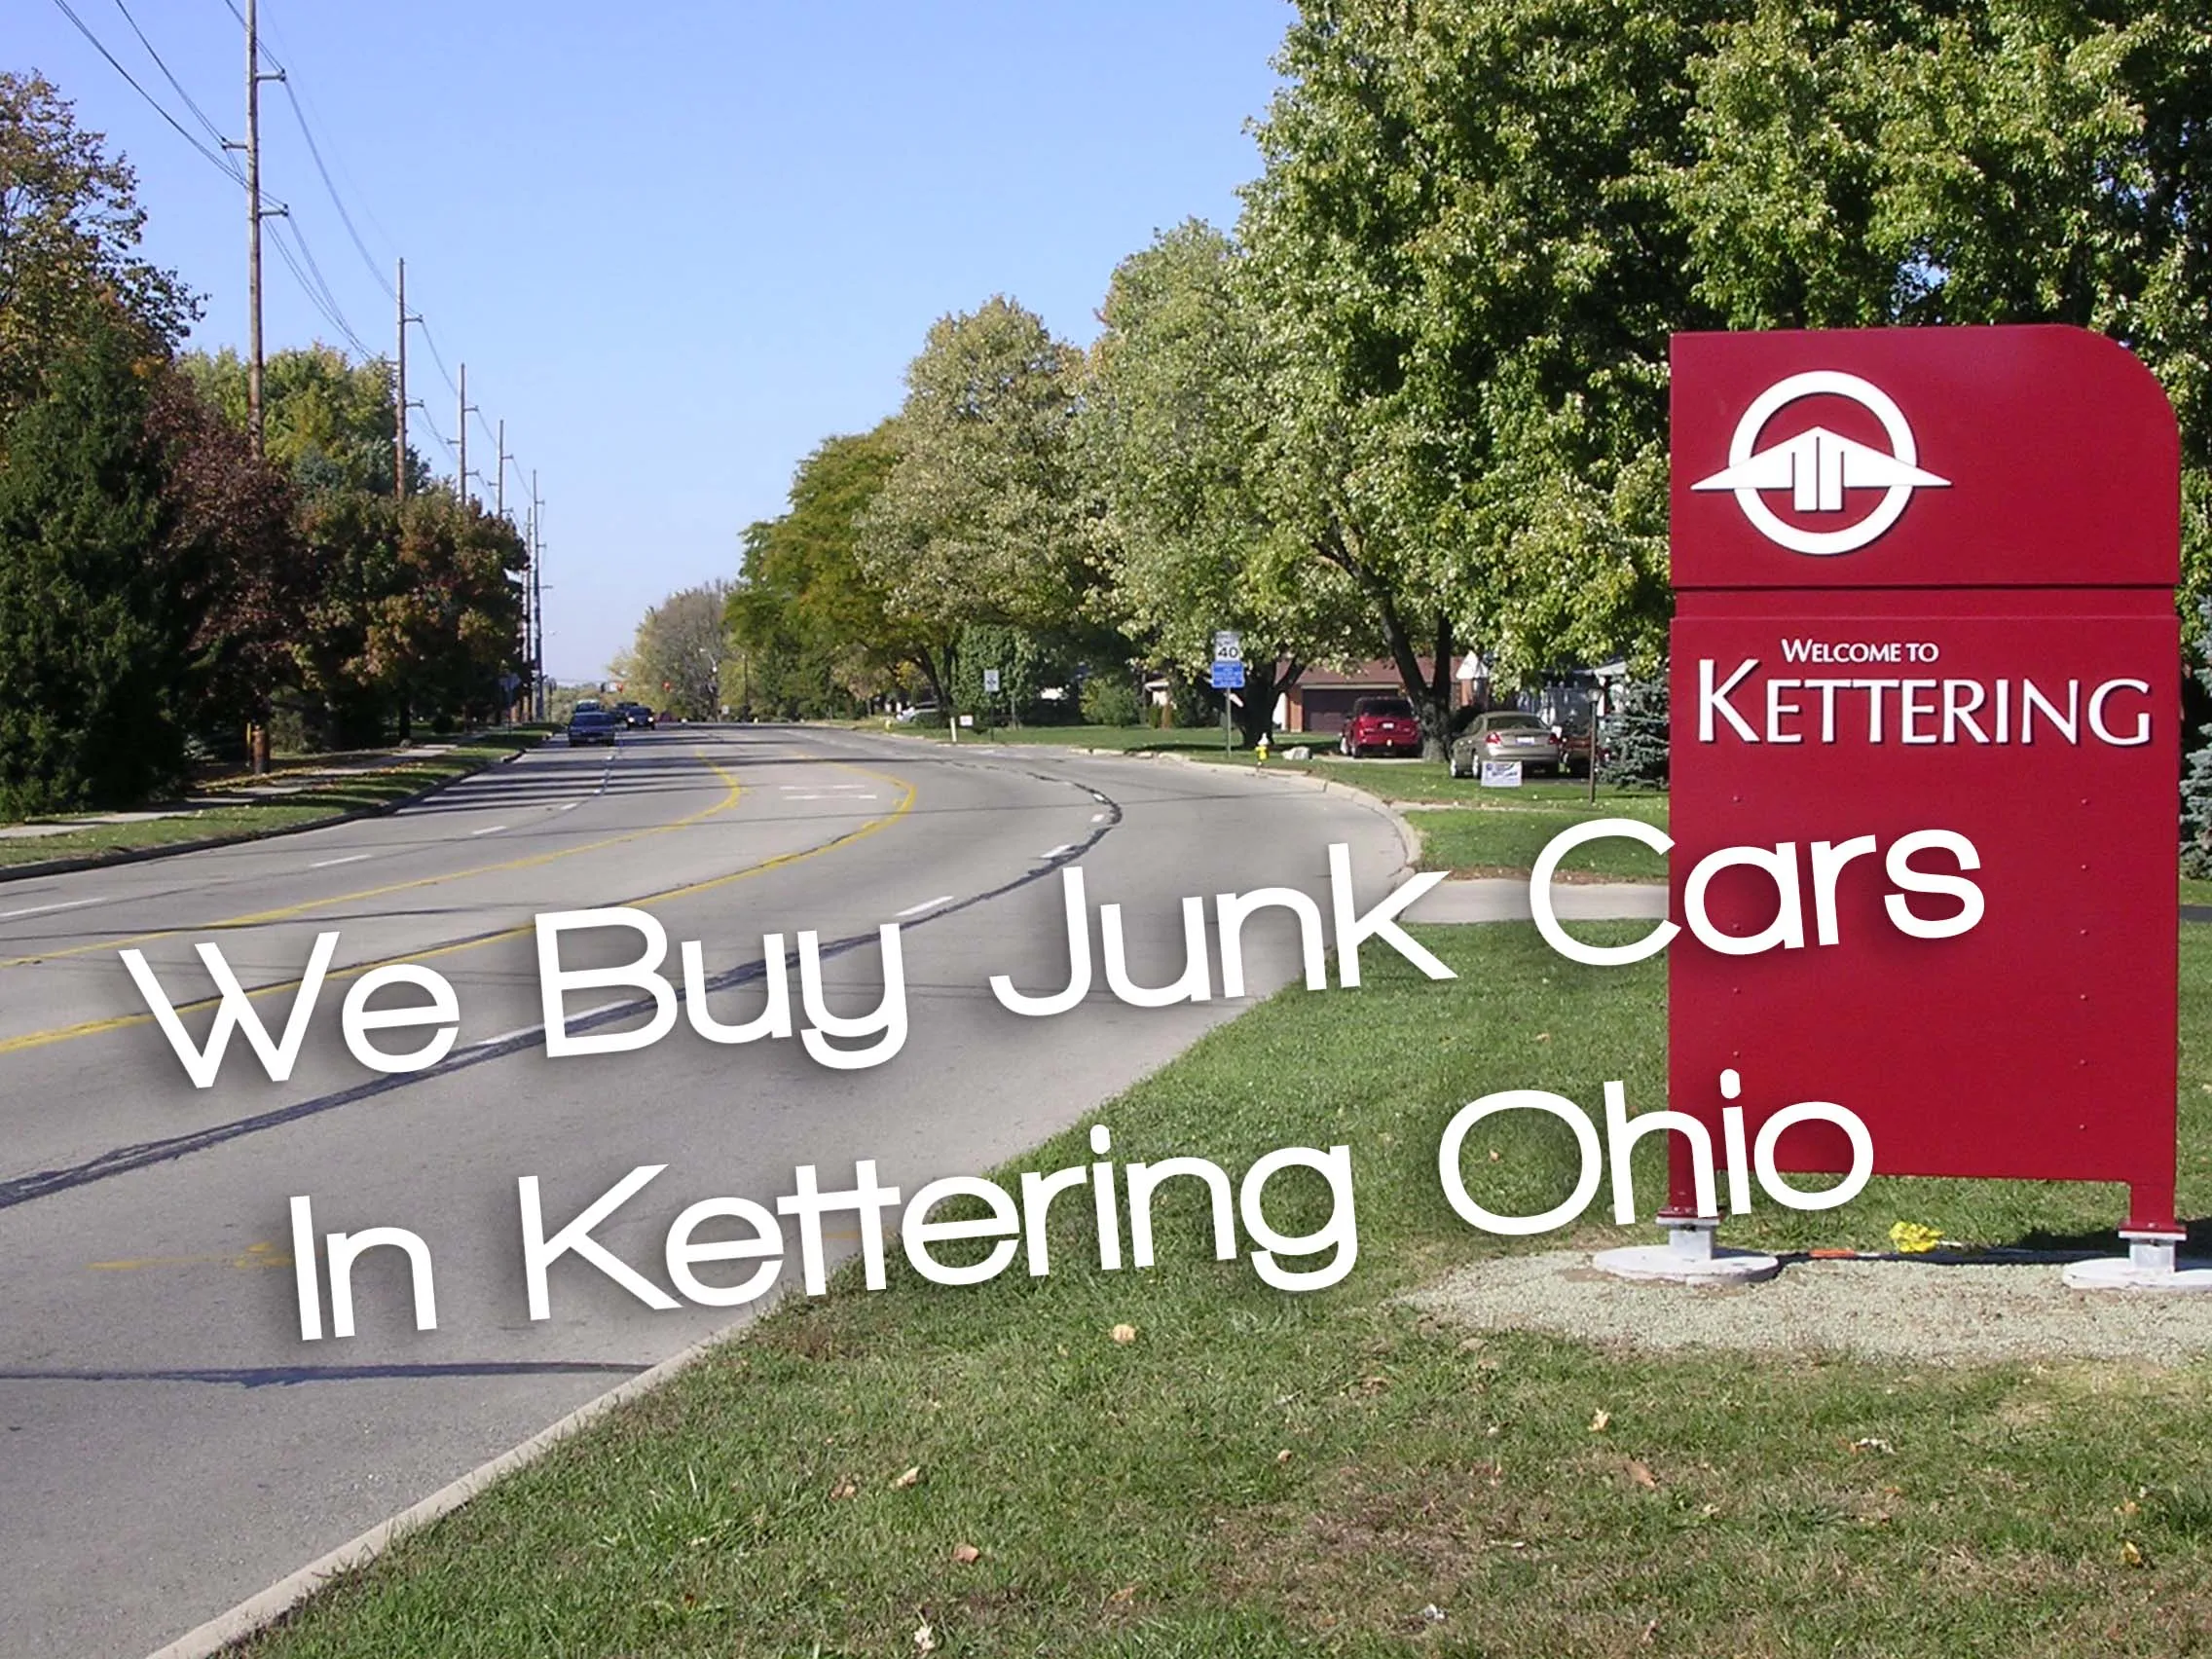 We Buy Junk Cars in Kettering Ohio